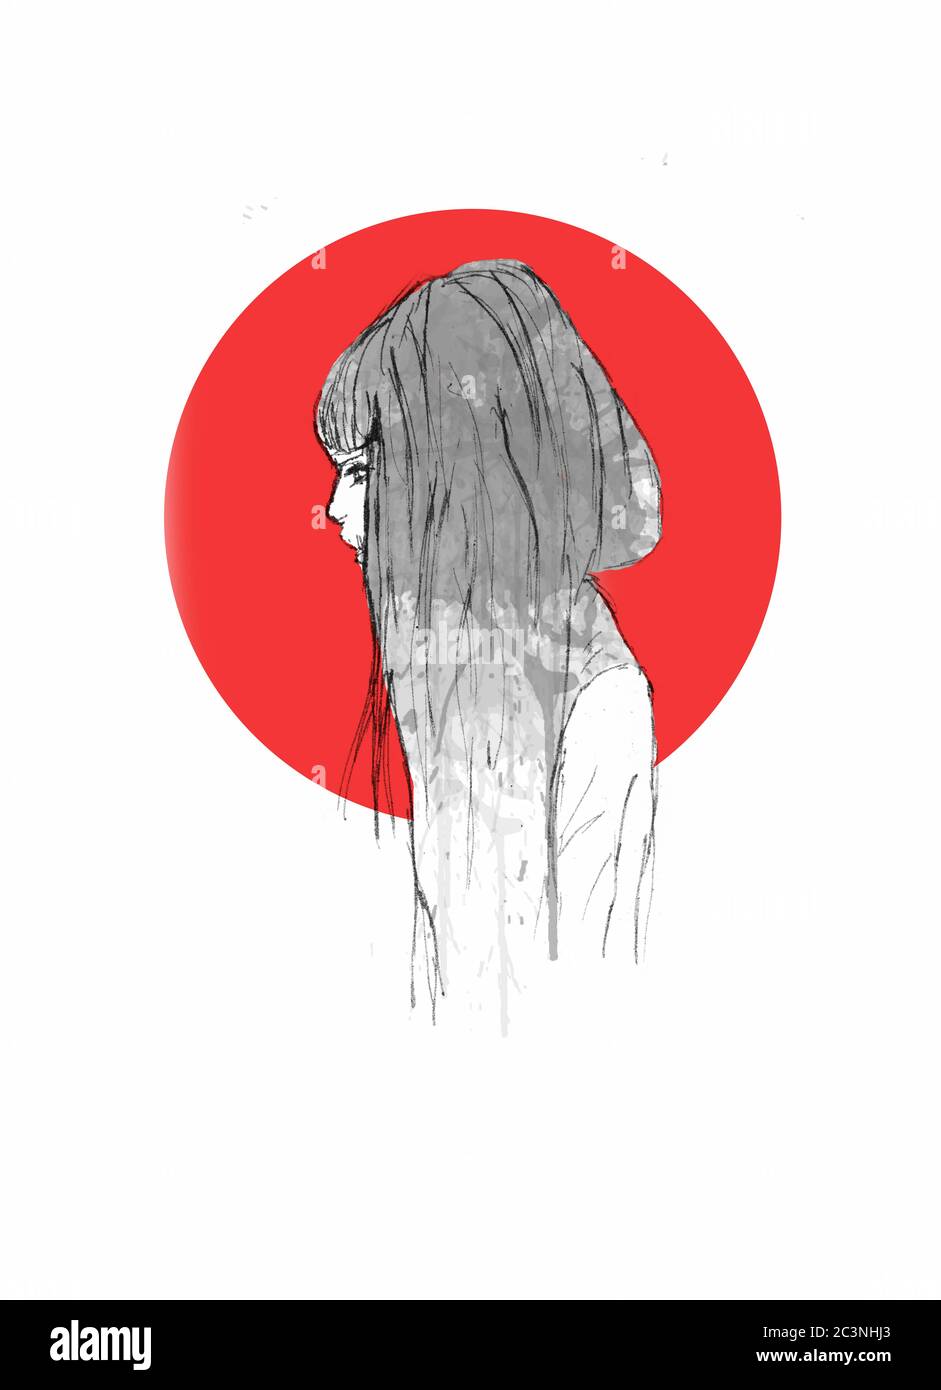 Portrait de belle fille dessiné à la main - croquis au crayon d'une fille Anime avec cercle rouge sur l'arrière-plan Banque D'Images